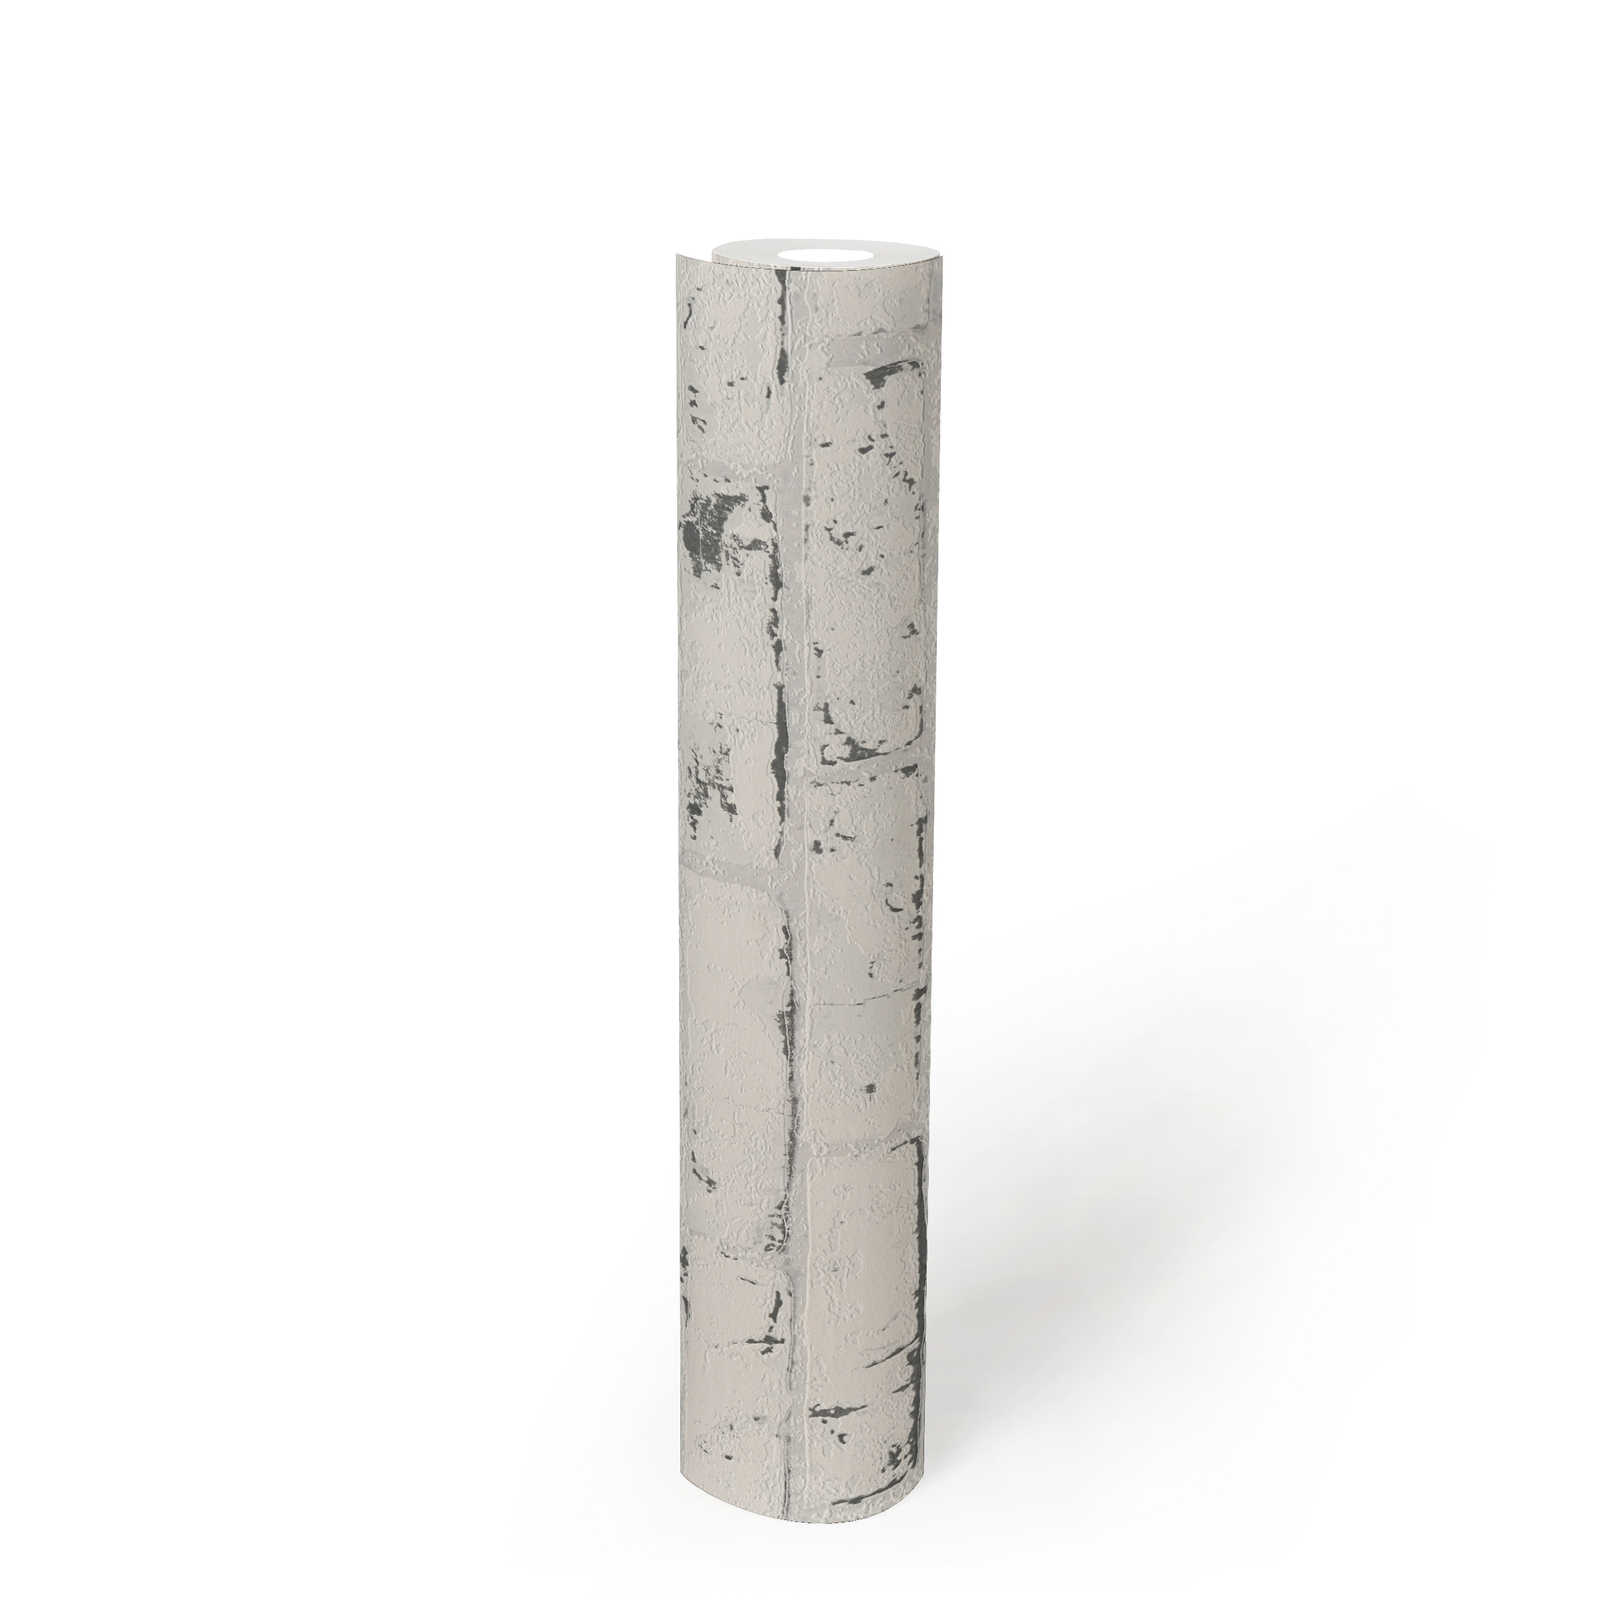             Papel pintado con aspecto de piedra con motivo de ladrillo y efecto 3D - gris, beige
        